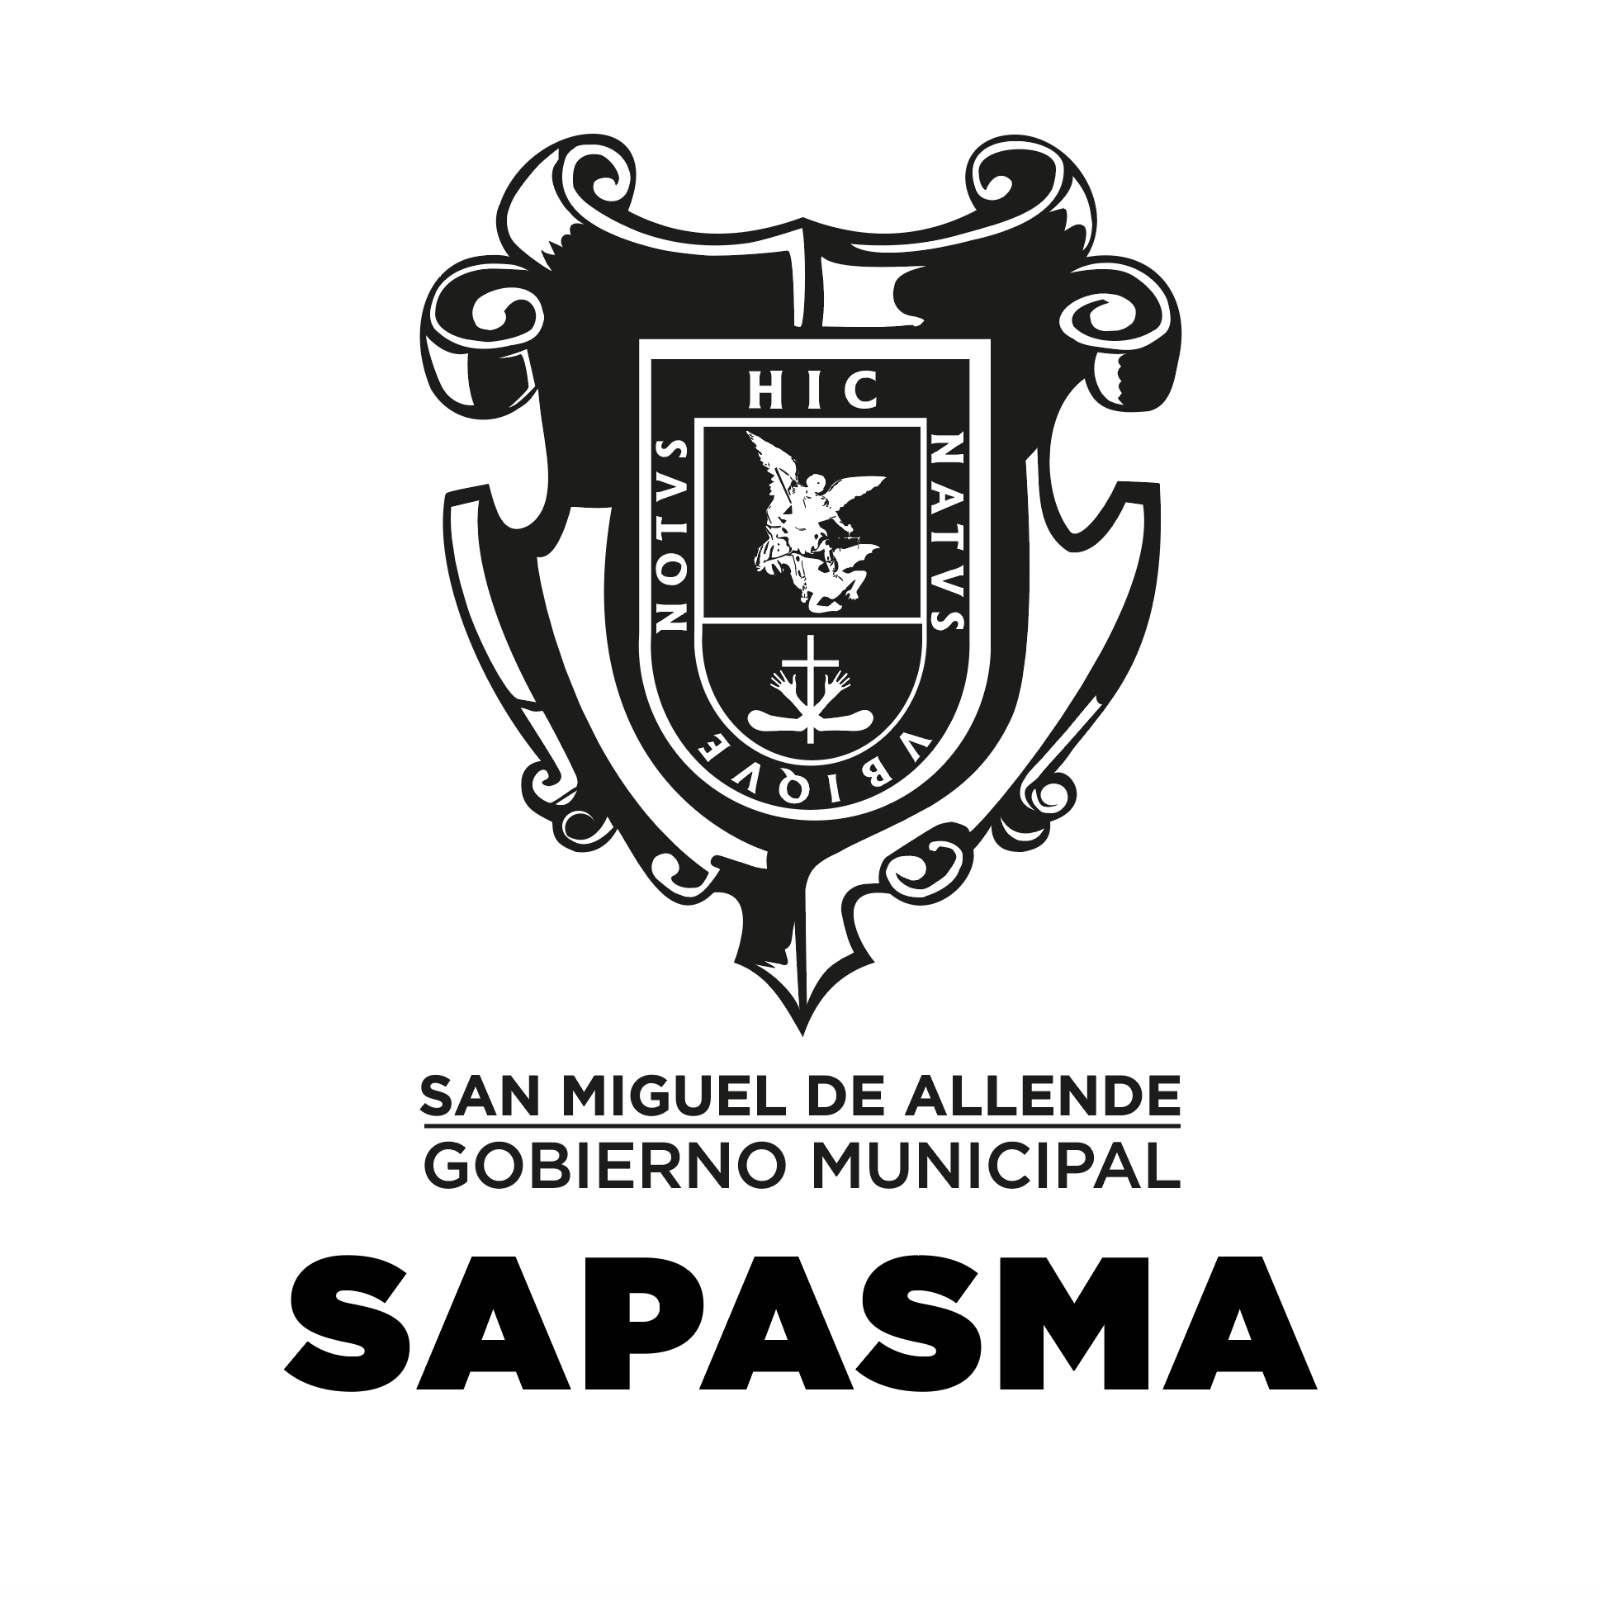 SAPASMA – San Miguel de Allende